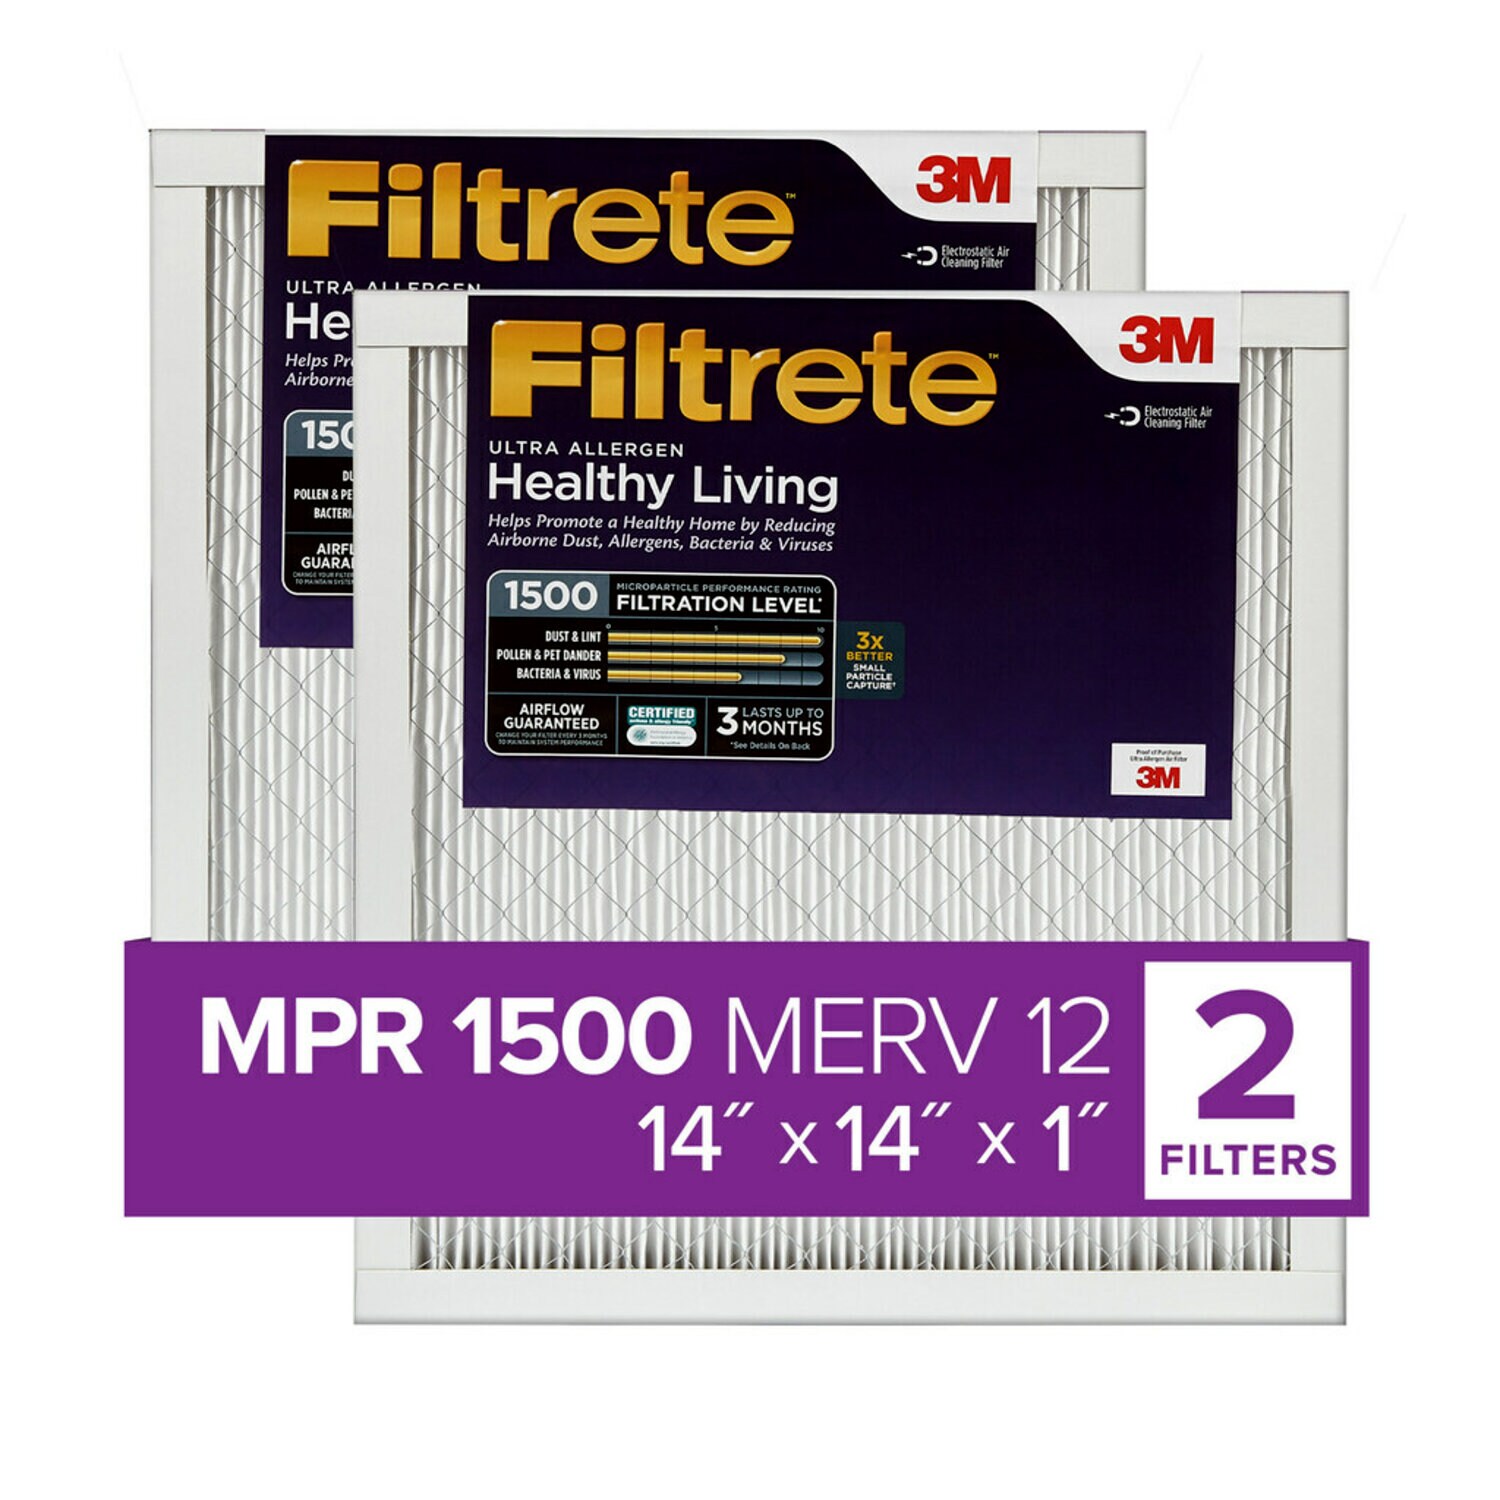 7100212151 - Filtrete Ultra Allergen Reduction Filter UR11-2PK-1E, 14 in x 14 in x 1 in (35.5 cm x 35.5 cm x 2.5 cm)